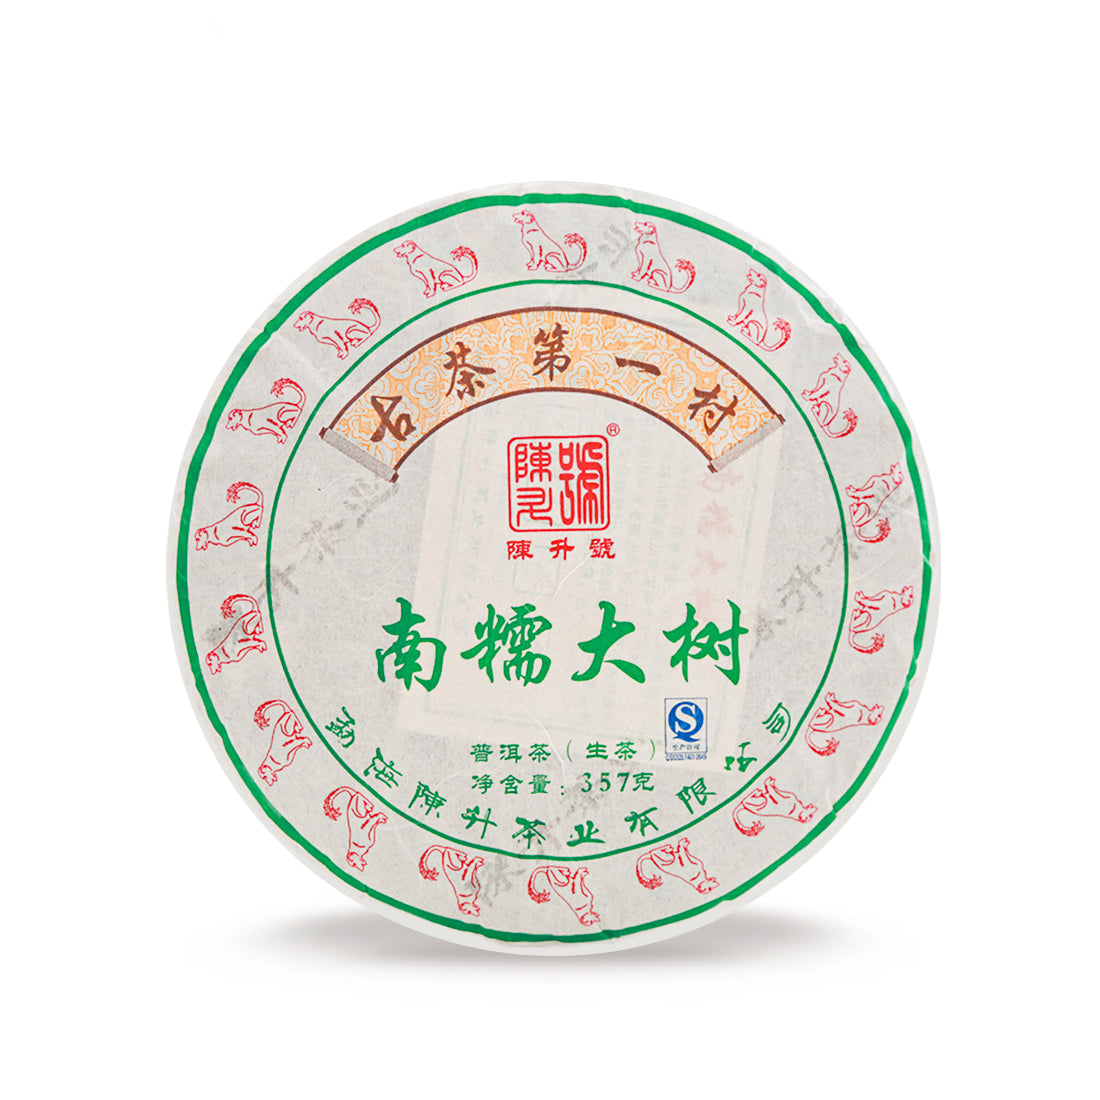 
                  
                    Chen Sheng Hao 2018 Nan Nuo Pu'er Tea Cake
                  
                